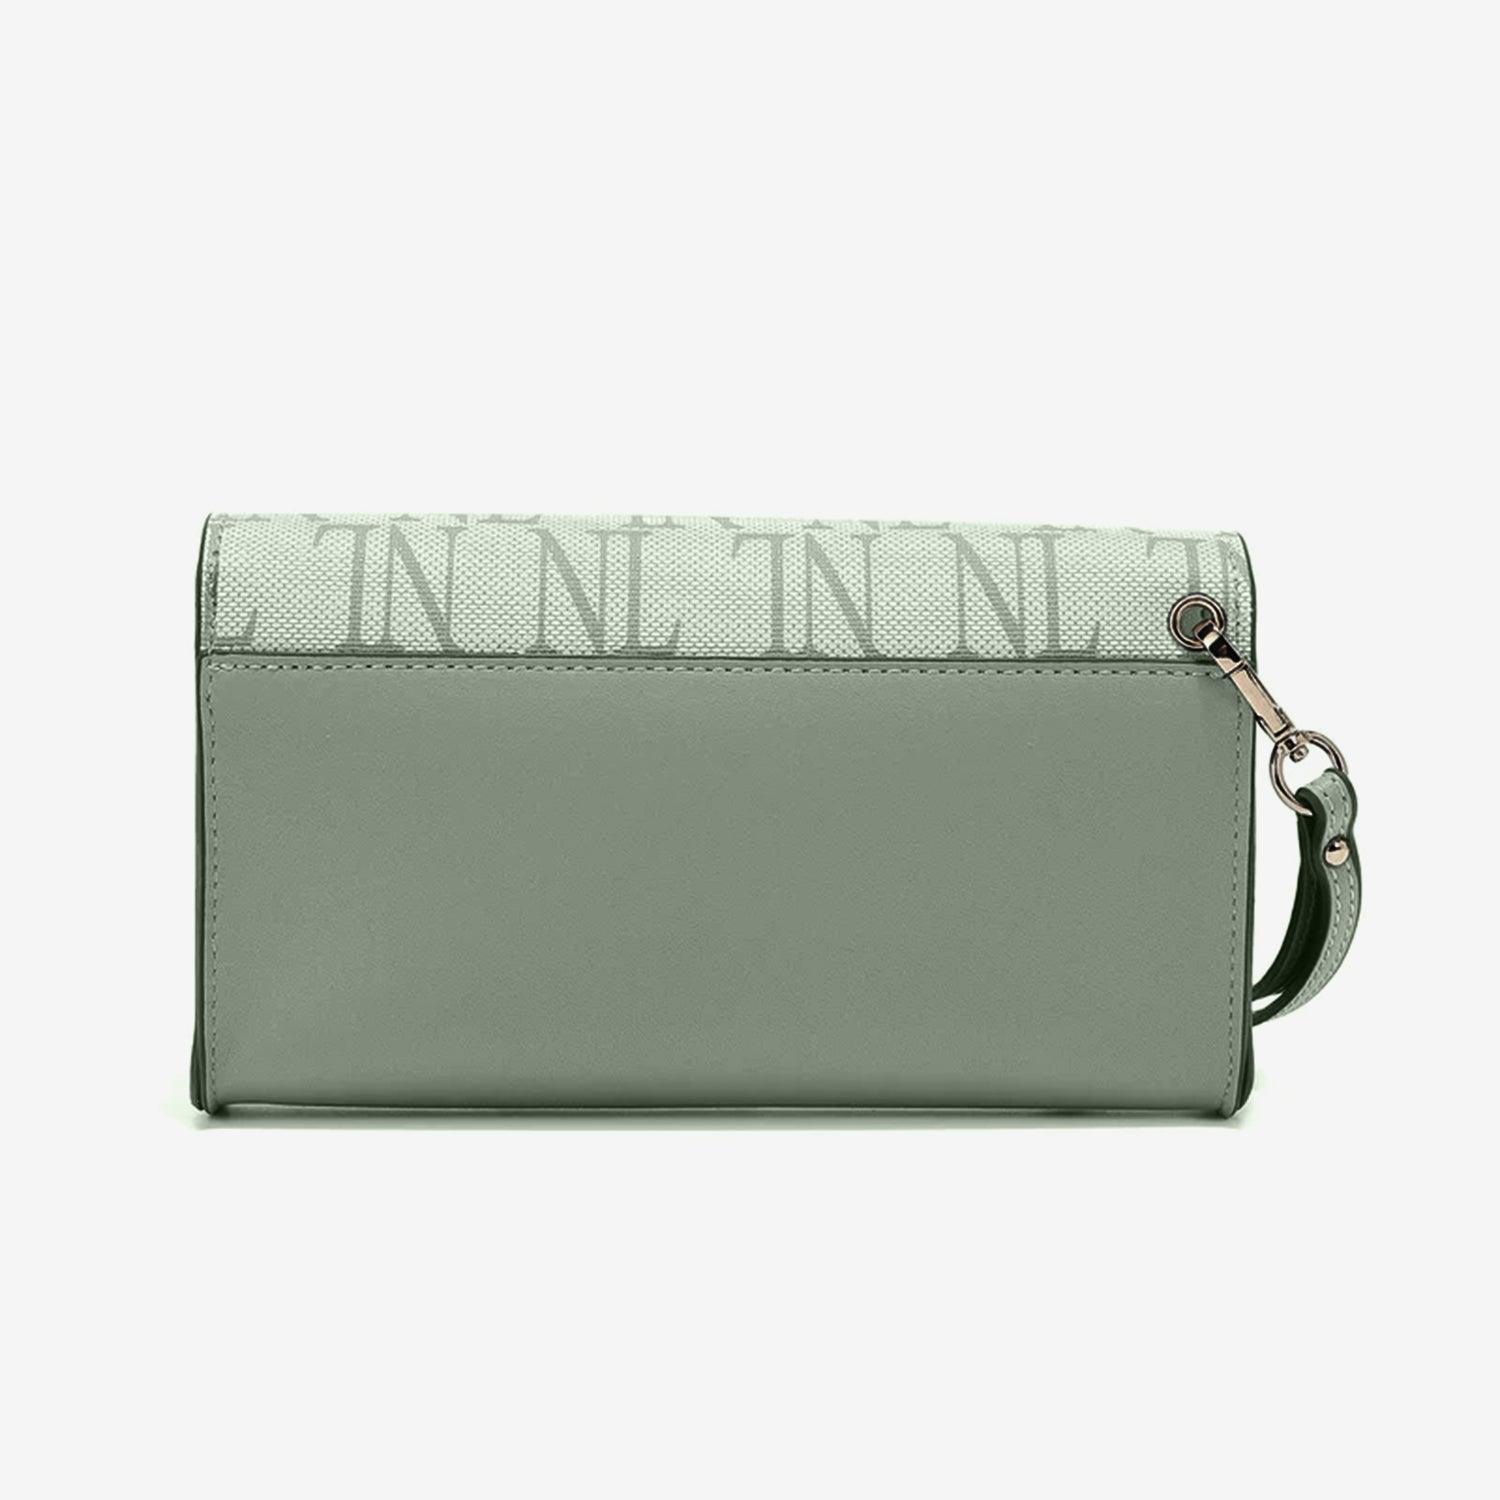 a women's wallet with a zipper